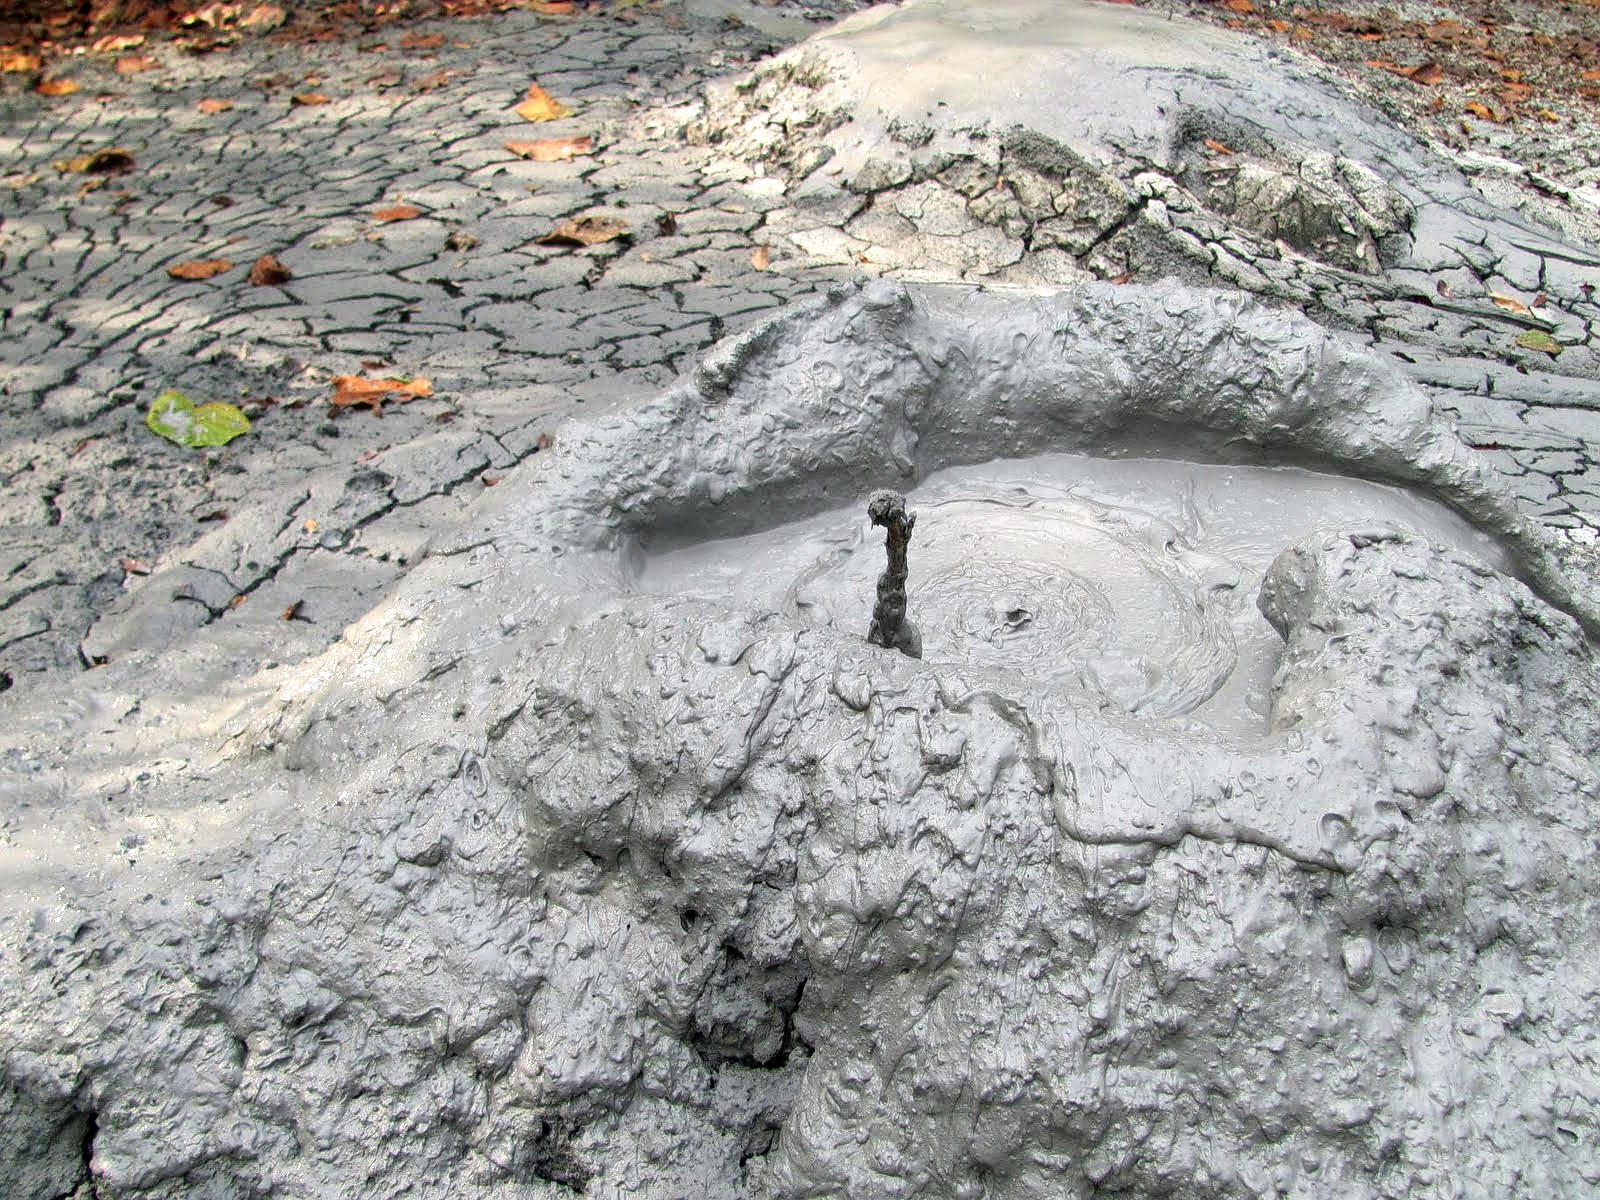 Mud Volcanoes Overview